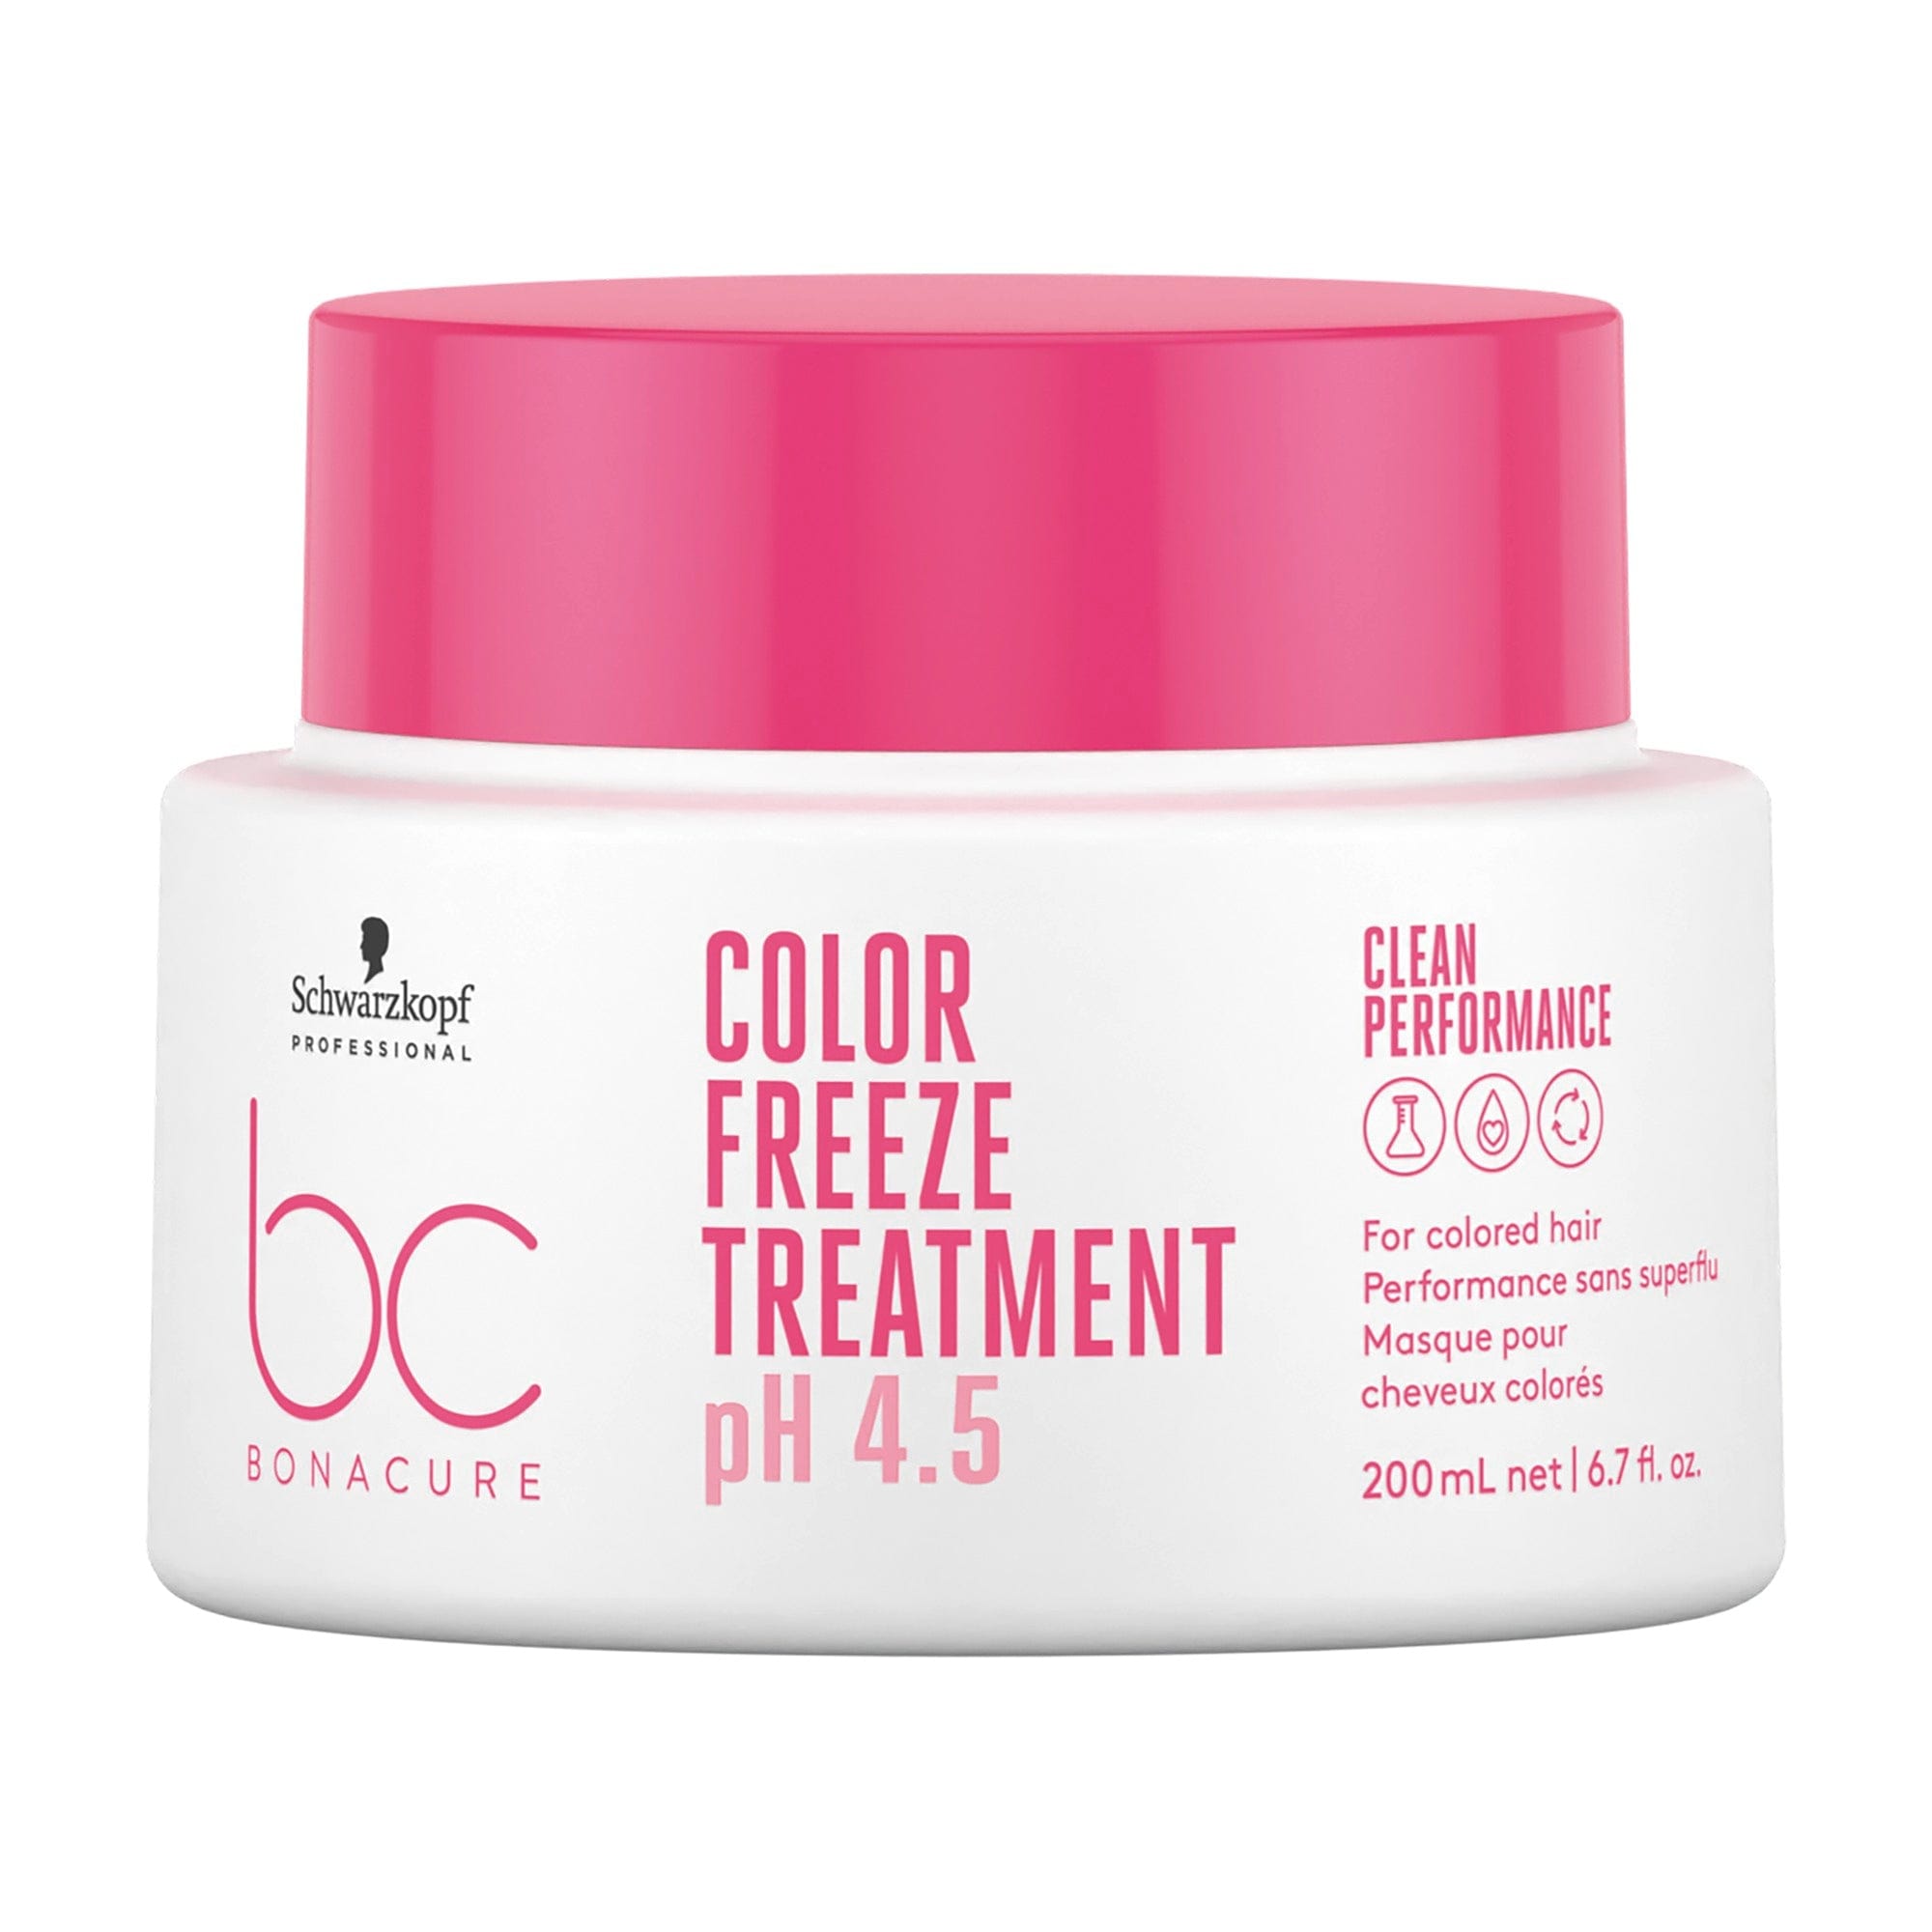 BC Bonacure NUEVO Bonacure Color Freeze Tratamiento 200ml Roberta Beauty Club